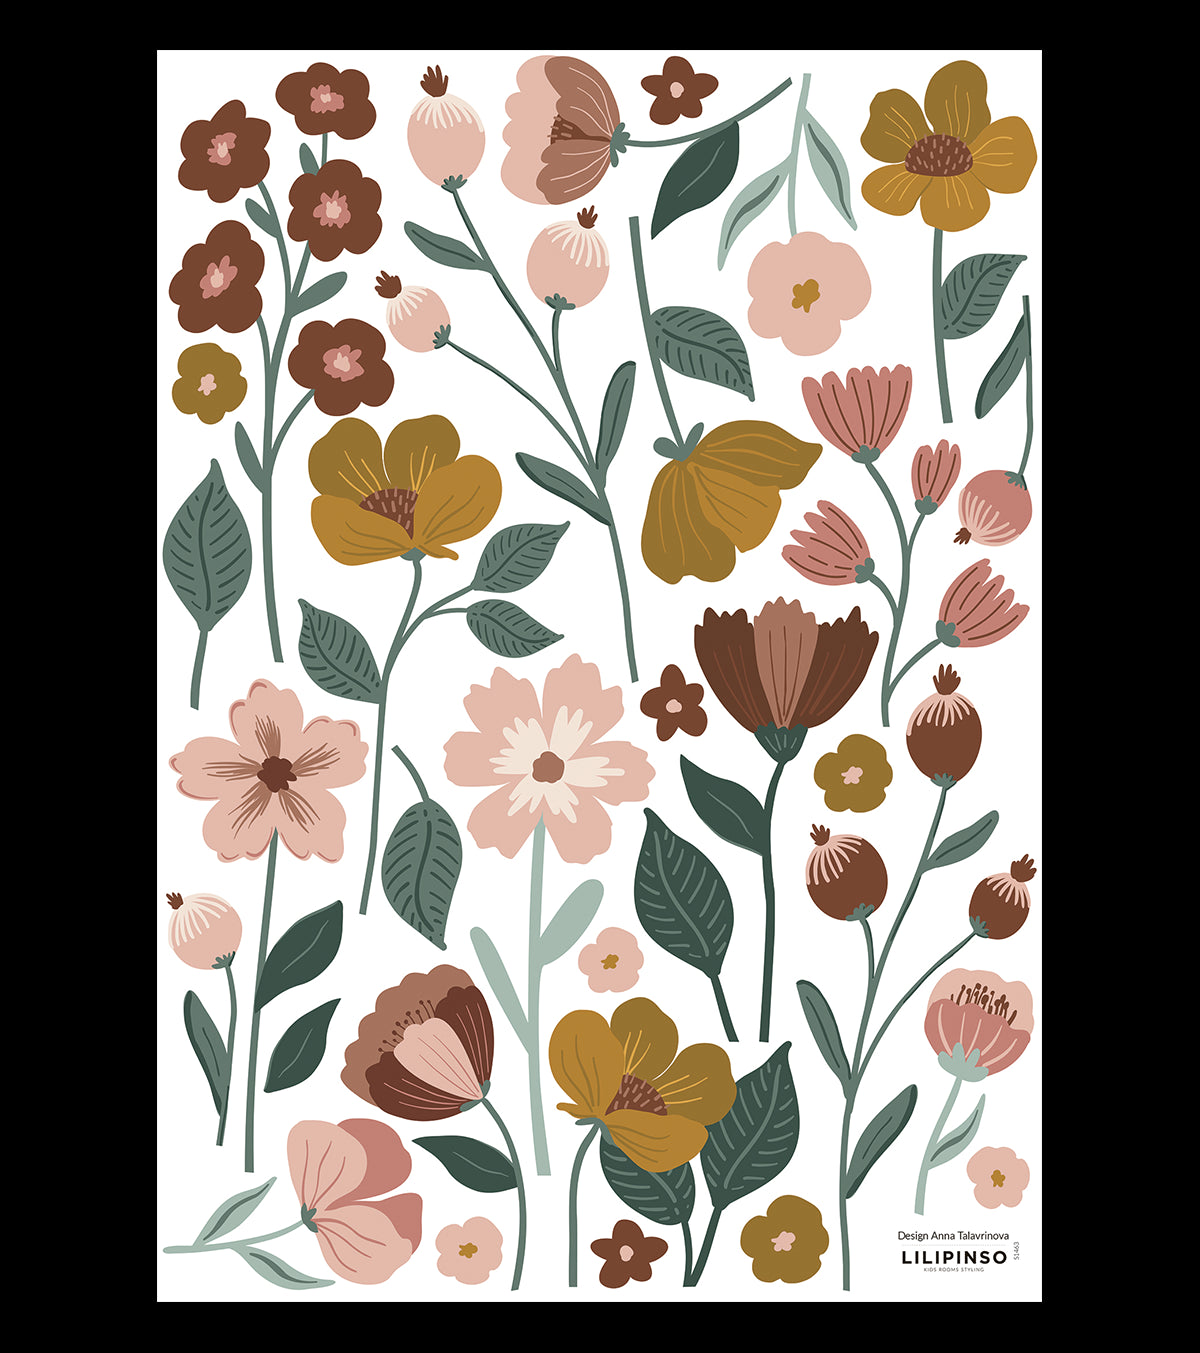 🥇 Stickers muraux fleur minimaliste French 545 🥇